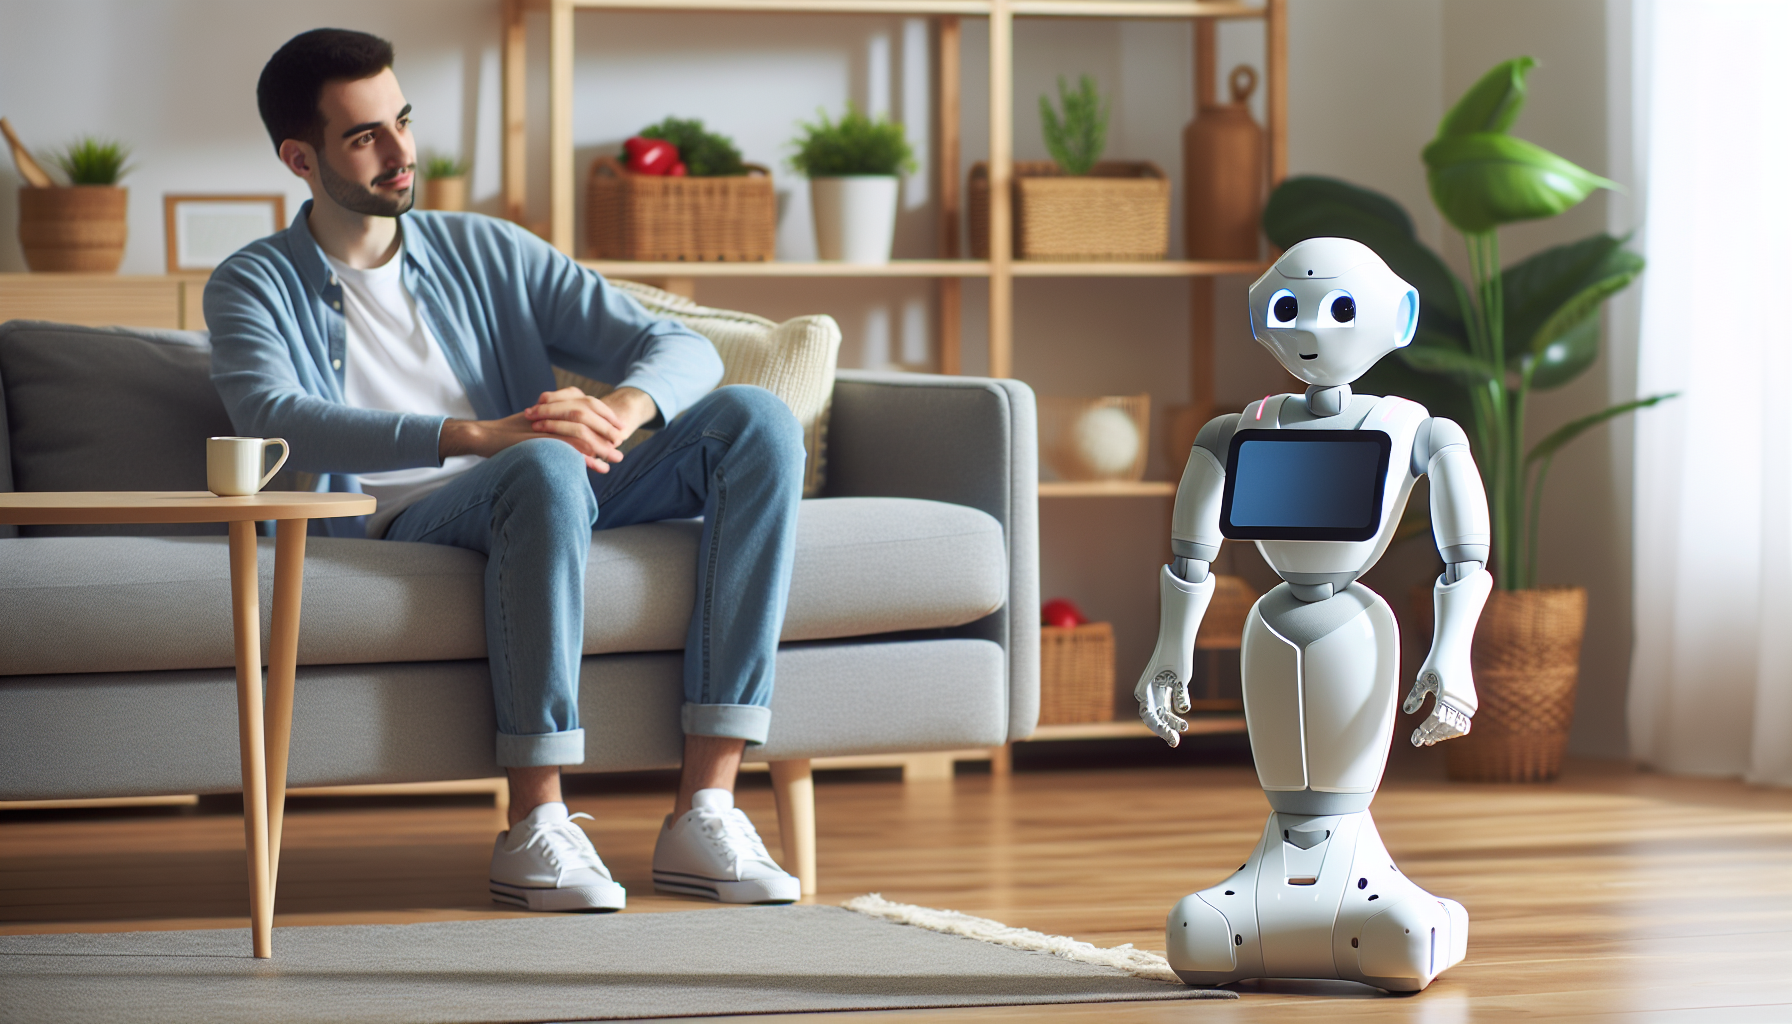 Softbank'ın sosyal robotu Pepper'ın özellikleri, kullanımı ve toplum üzerindeki etkisi hakkında her şeyi öğrenin.